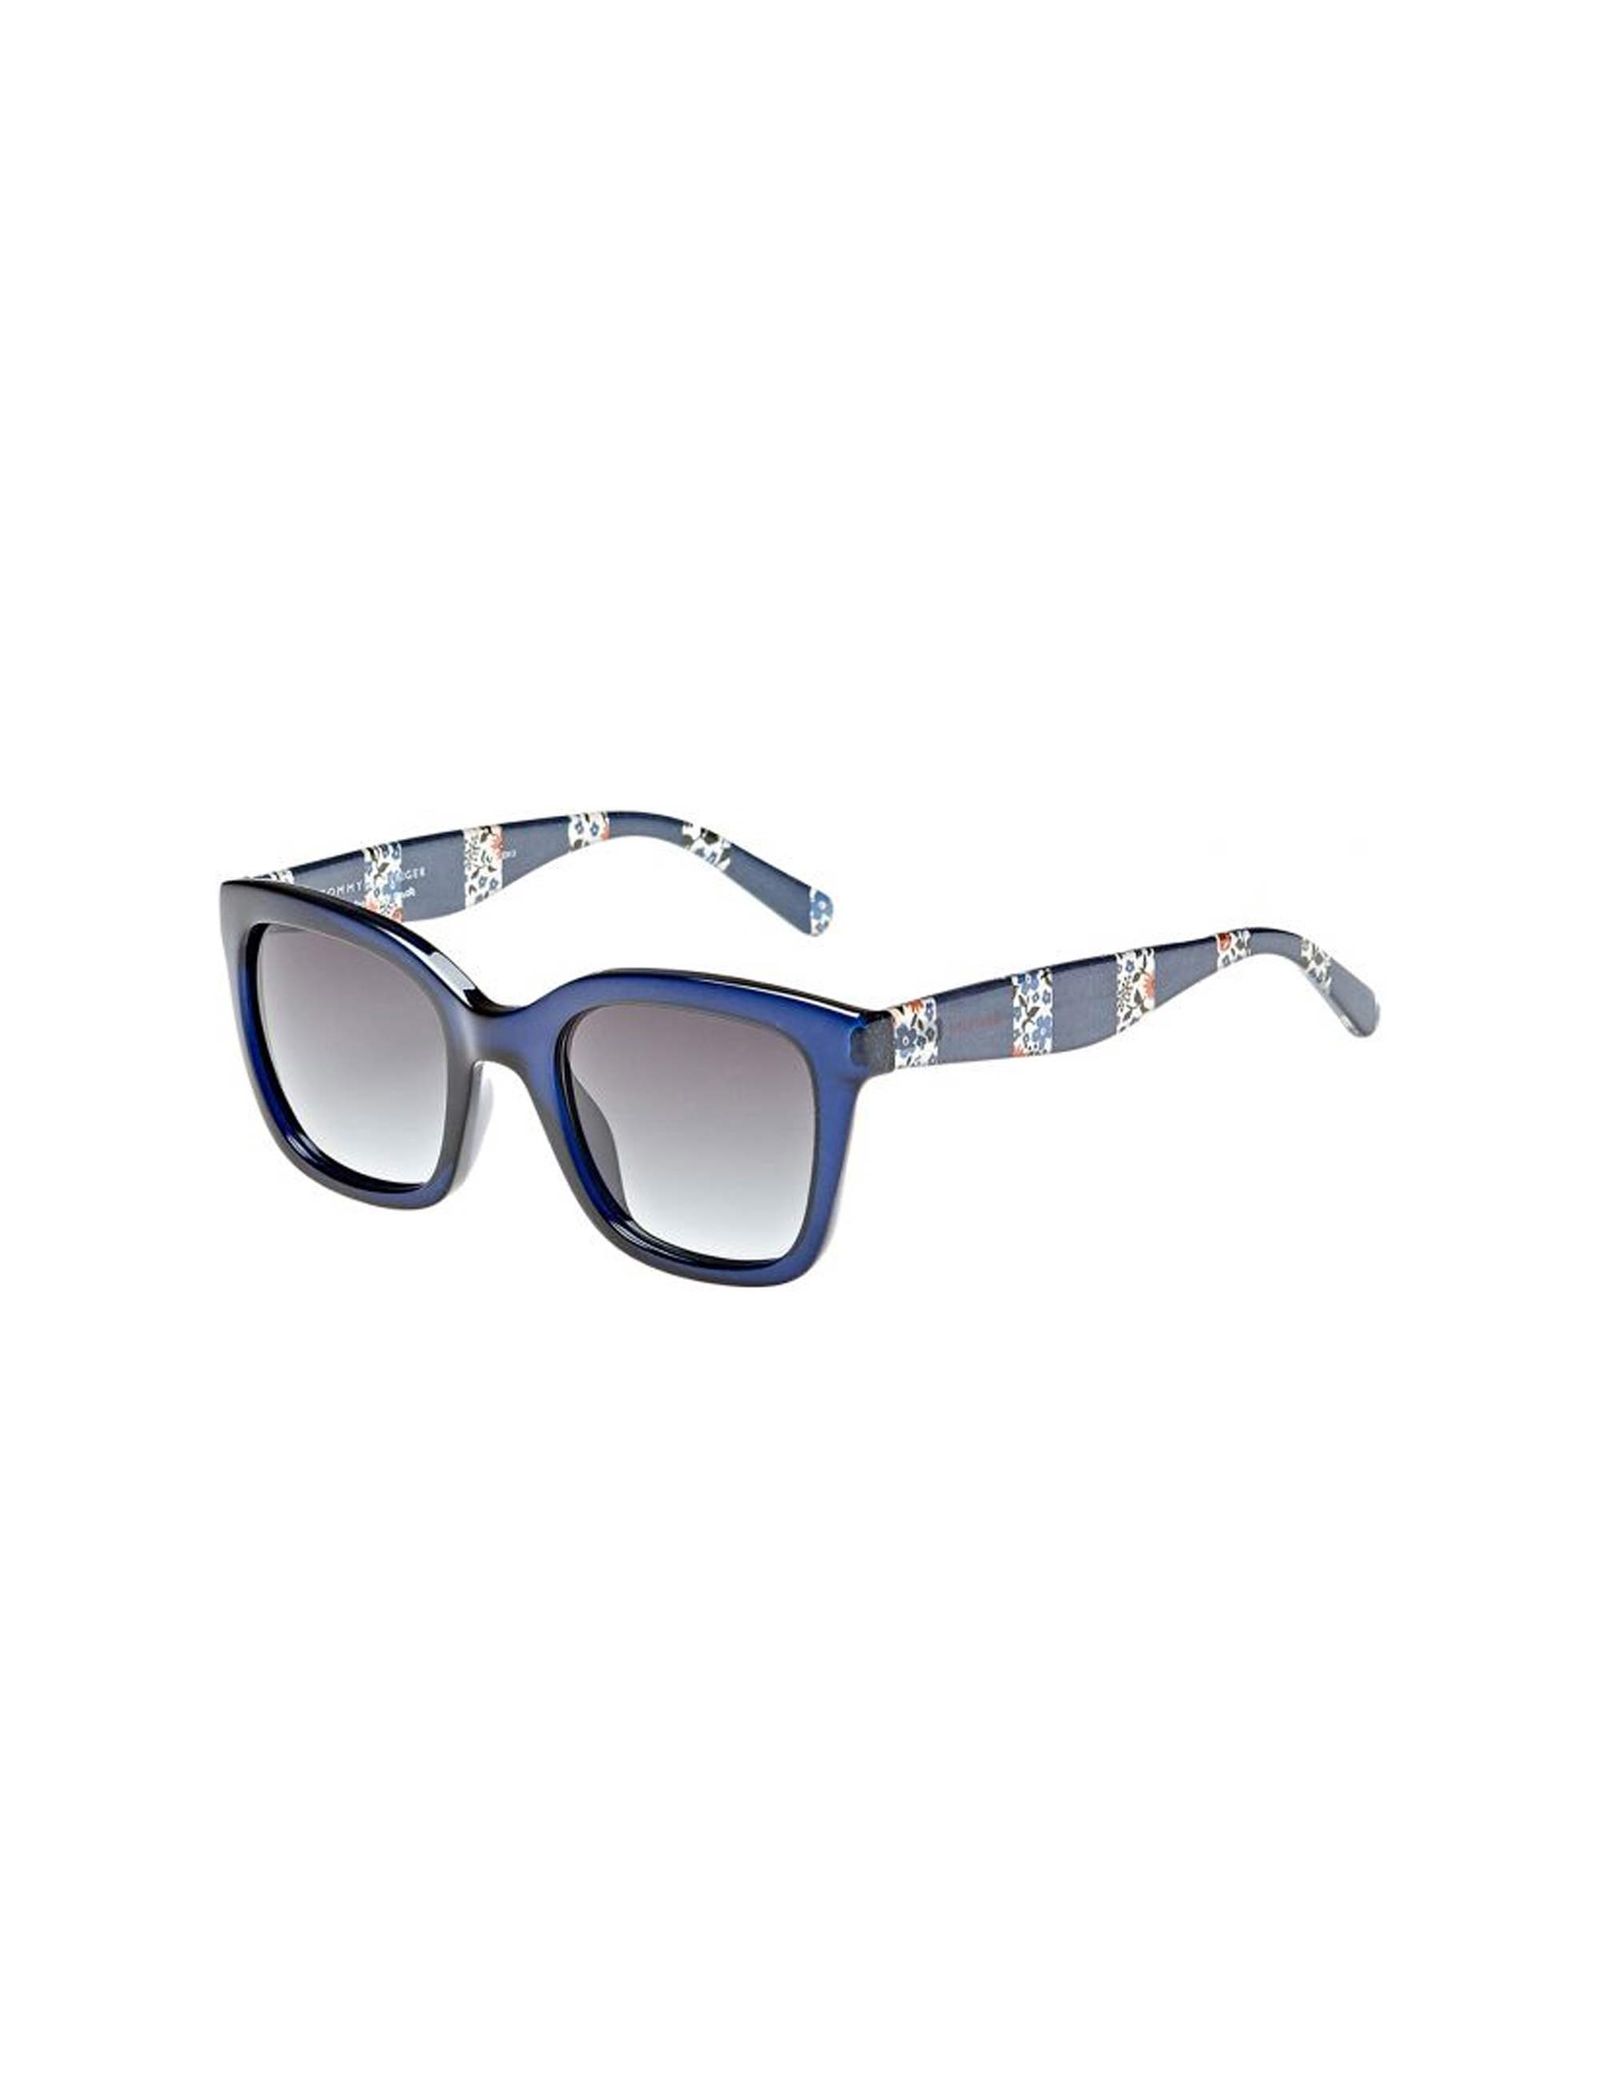 عینک آفتابی مربعی زنانه - تامی هیلفیگر - آبي - 2